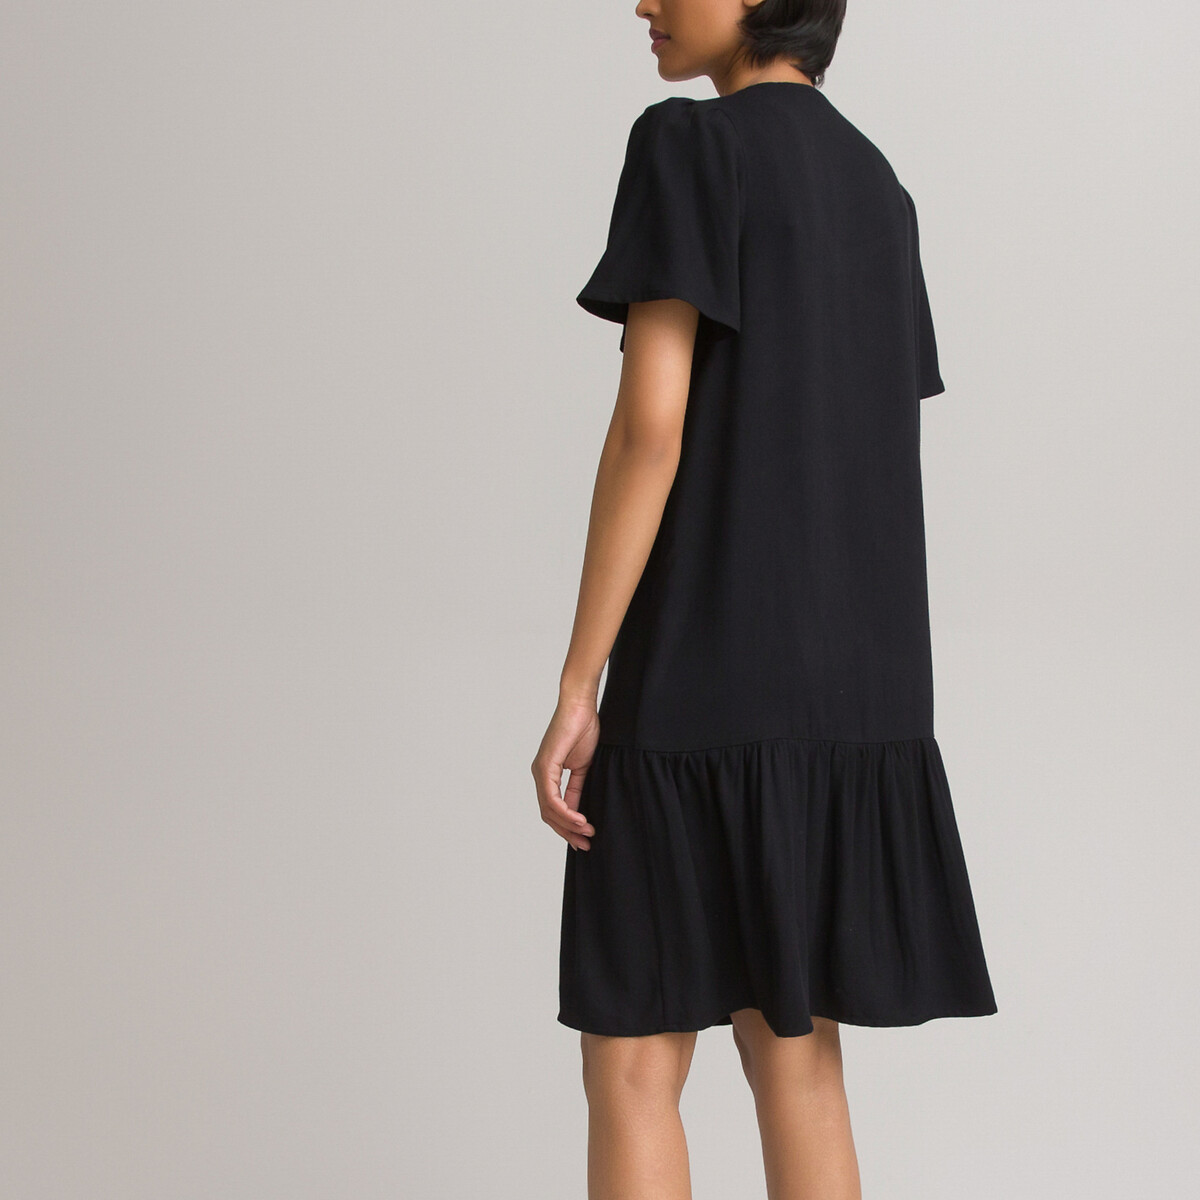 Платье LaRedoute Короткое с V-образным вырезом на пуговицах низ с воланом 46 черный, размер 46 - фото 4